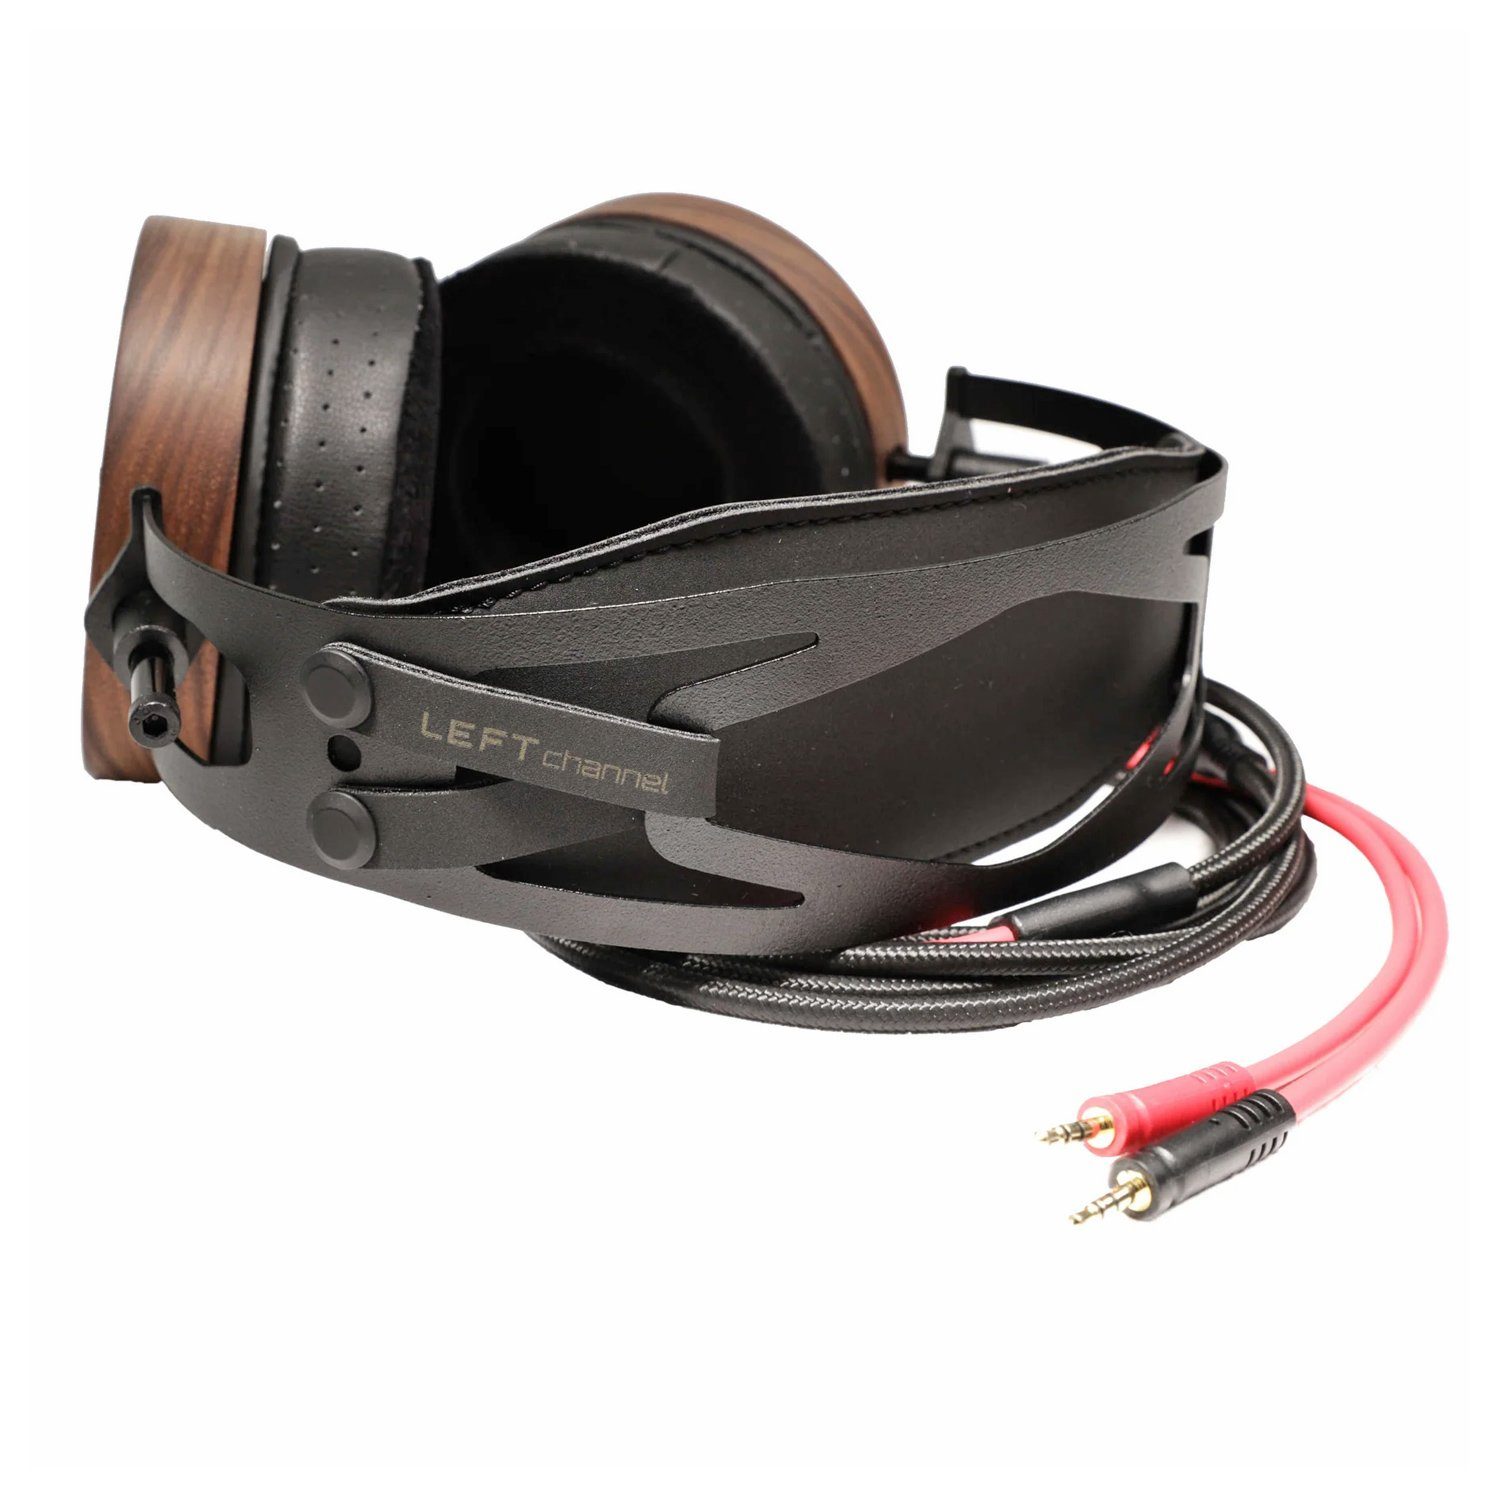 offener von Musik, S5X Mixing/Mastering Over-Ear-Kopfhörer Studio-Kopfhörer Tisch-Stativ) mit (für Mixing/Mastering binauraler Audio für binauraler Musik, von OLLO